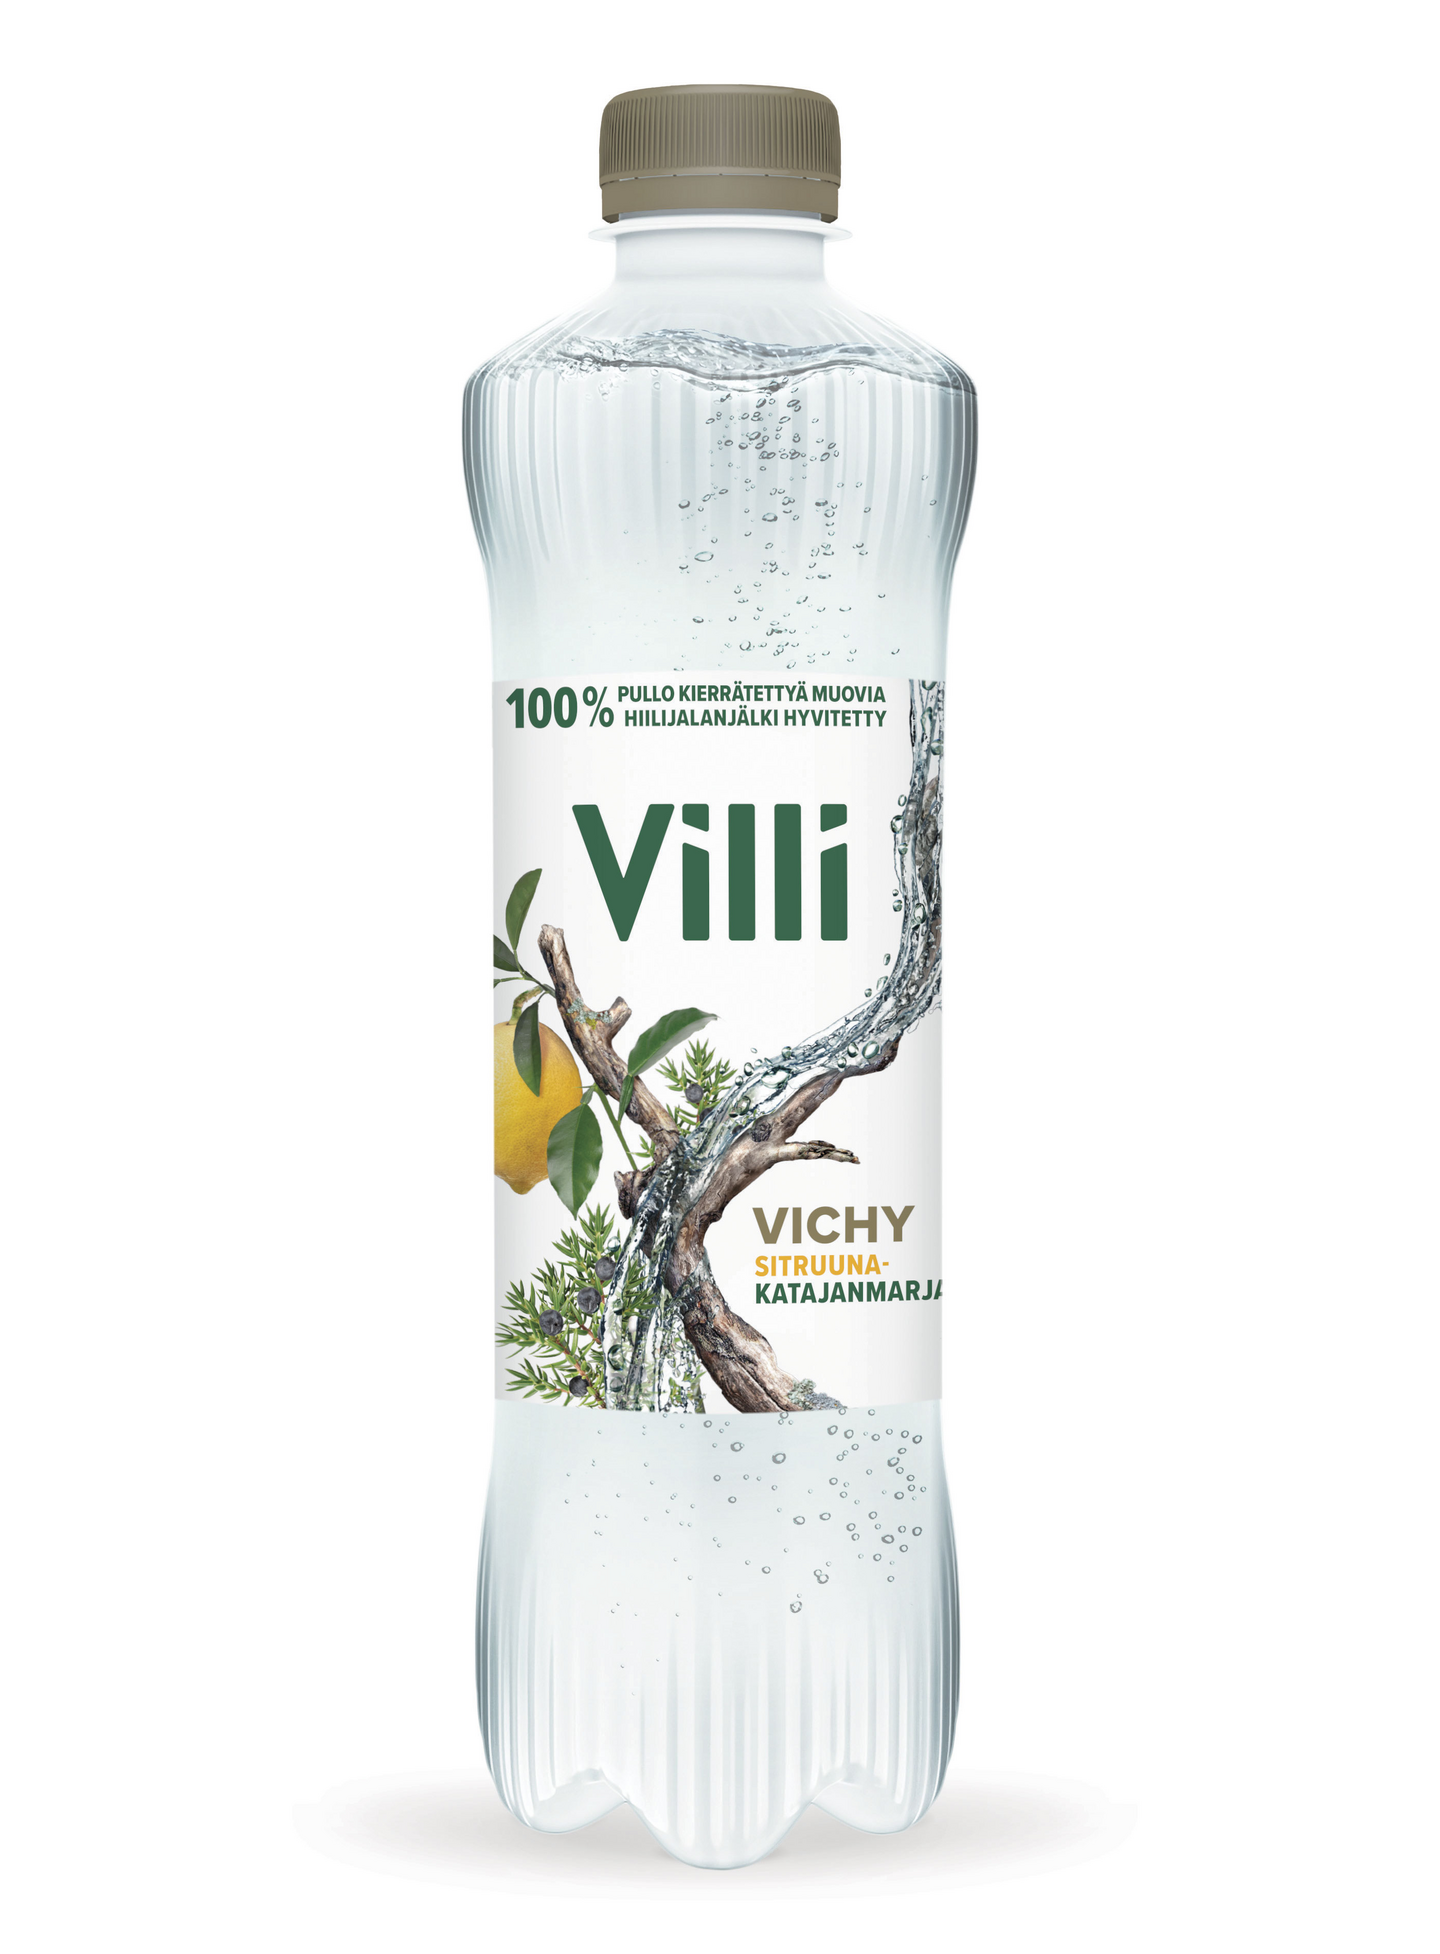 Villi Vichy sitruuna-katajanmarja 0,5l DOLLY